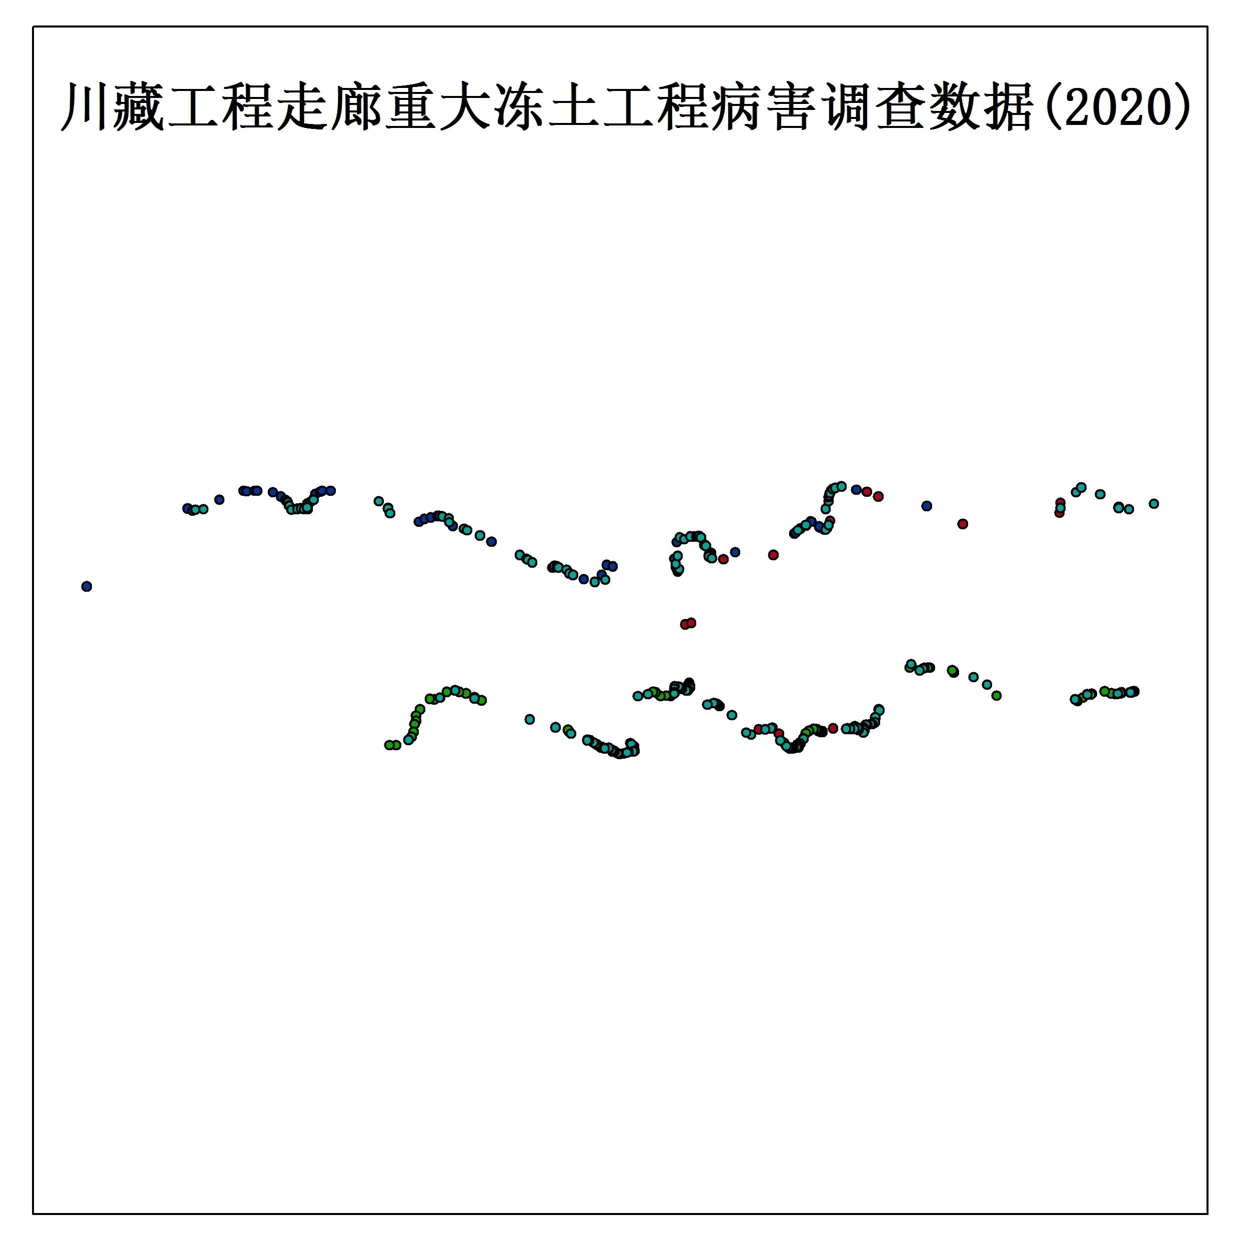 Survey data of major permafrost engineering diseases in Sichuan Tibet engineering corridor (2020)